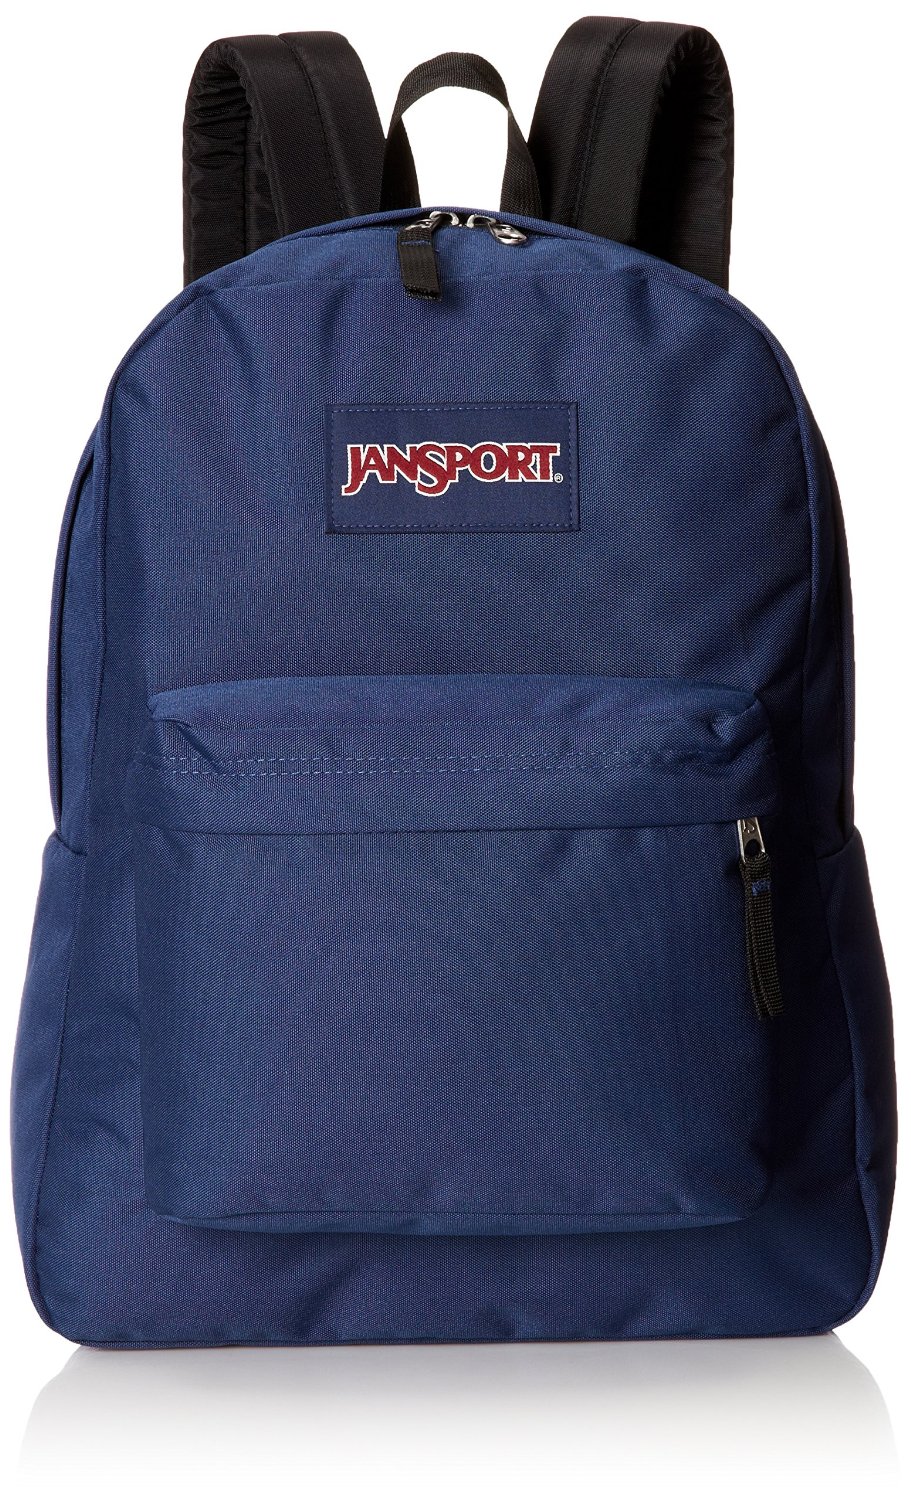 jansport school bag